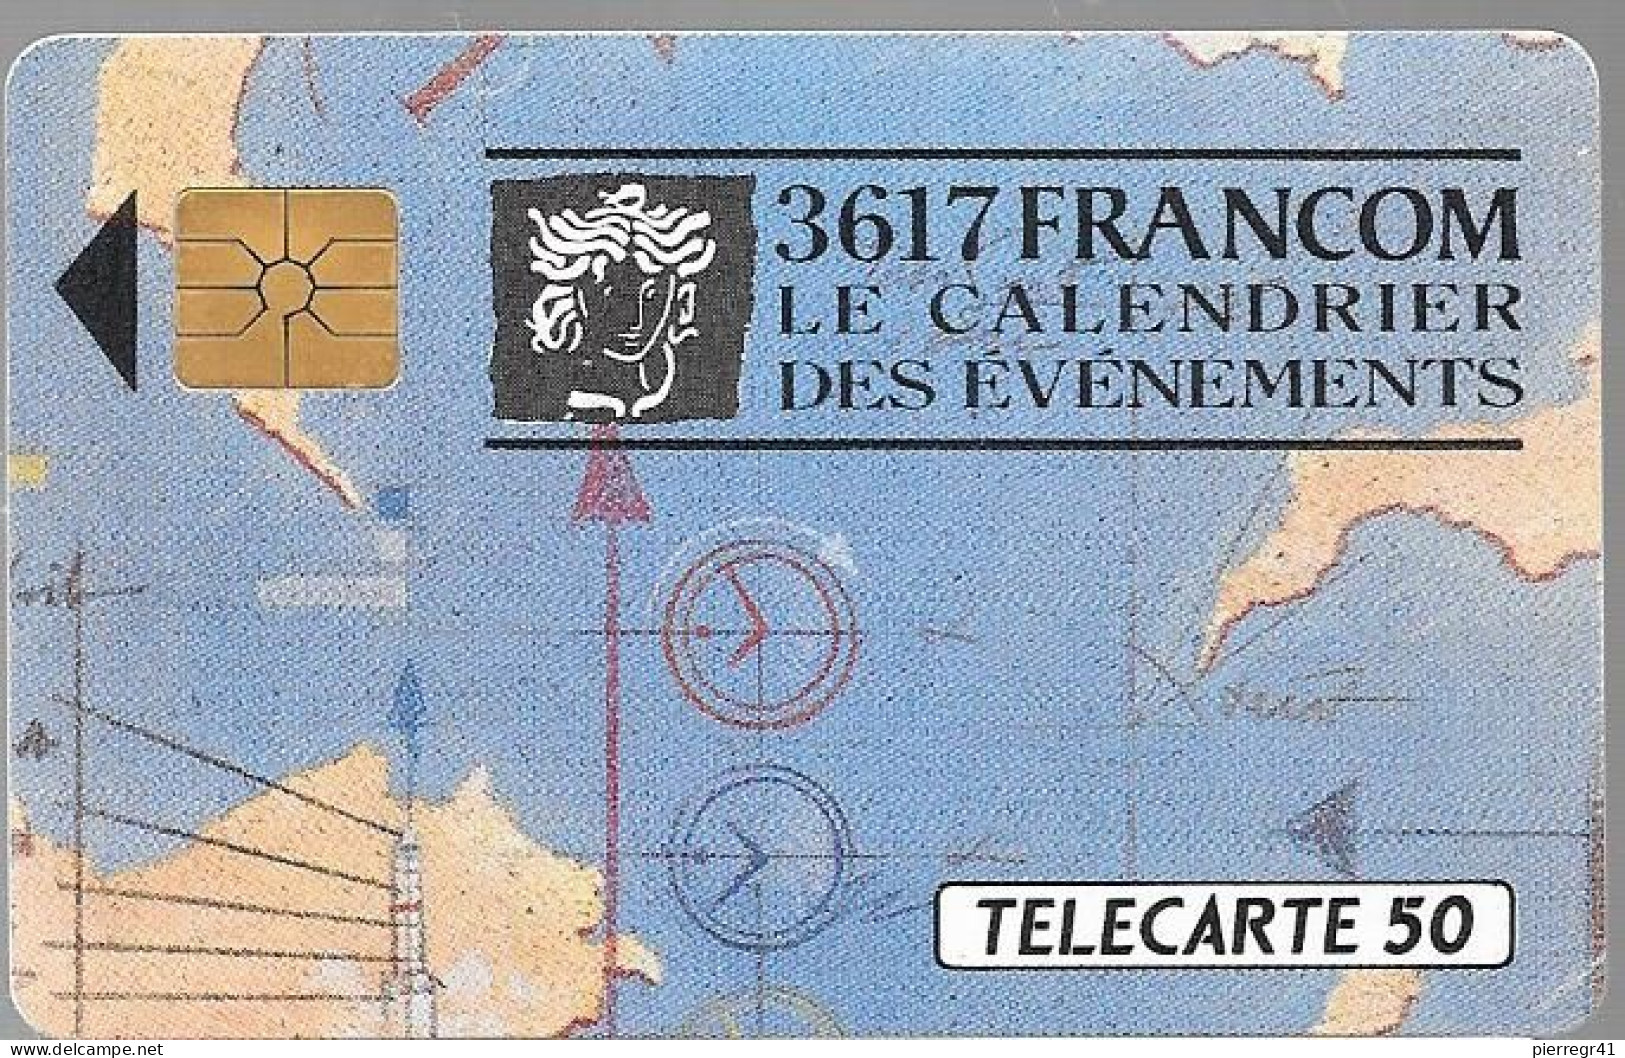 CARTE-PRIVEE-1990-D338-02/91-GEMA-3617 FRANCOM-Minitel Evénements-1000ex-R° Laqué-Utilisé-TBE/LUXE - Telefoonkaarten Voor Particulieren